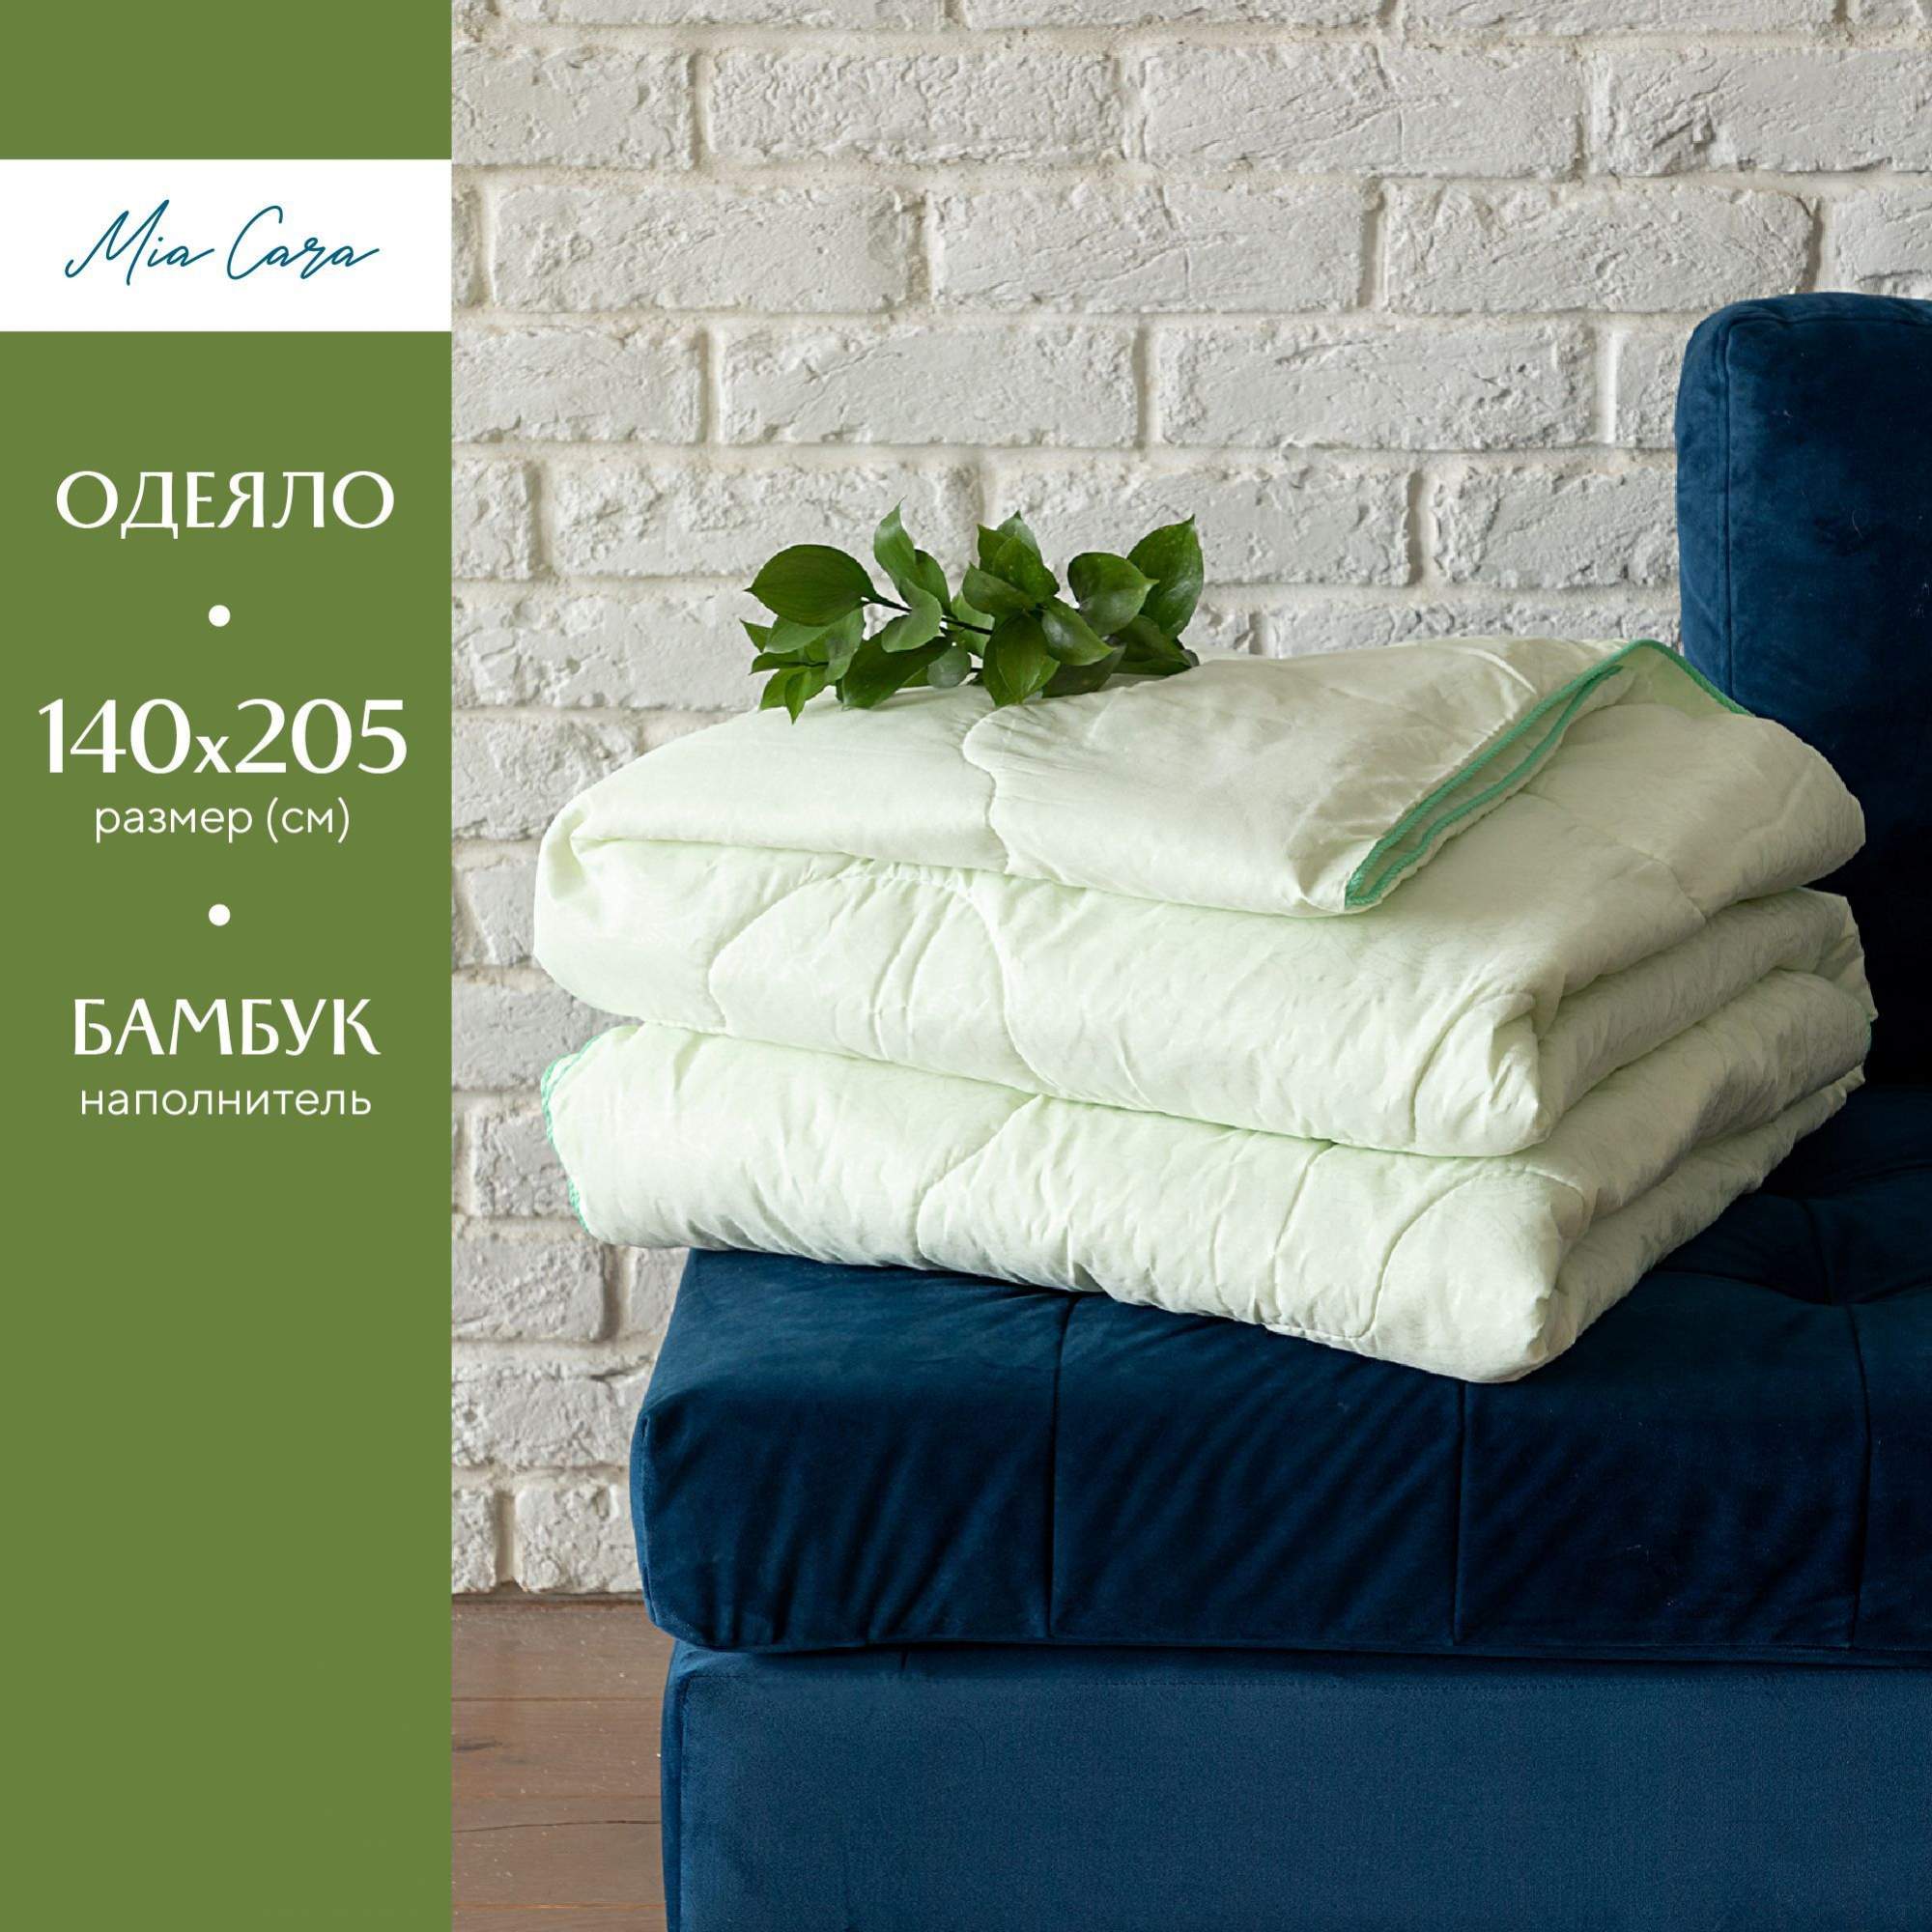 Одеяло "Mia Cara" wellness 140х205 бамбук рис. 004 купить в интернет-магазине, цены на Мегамаркет